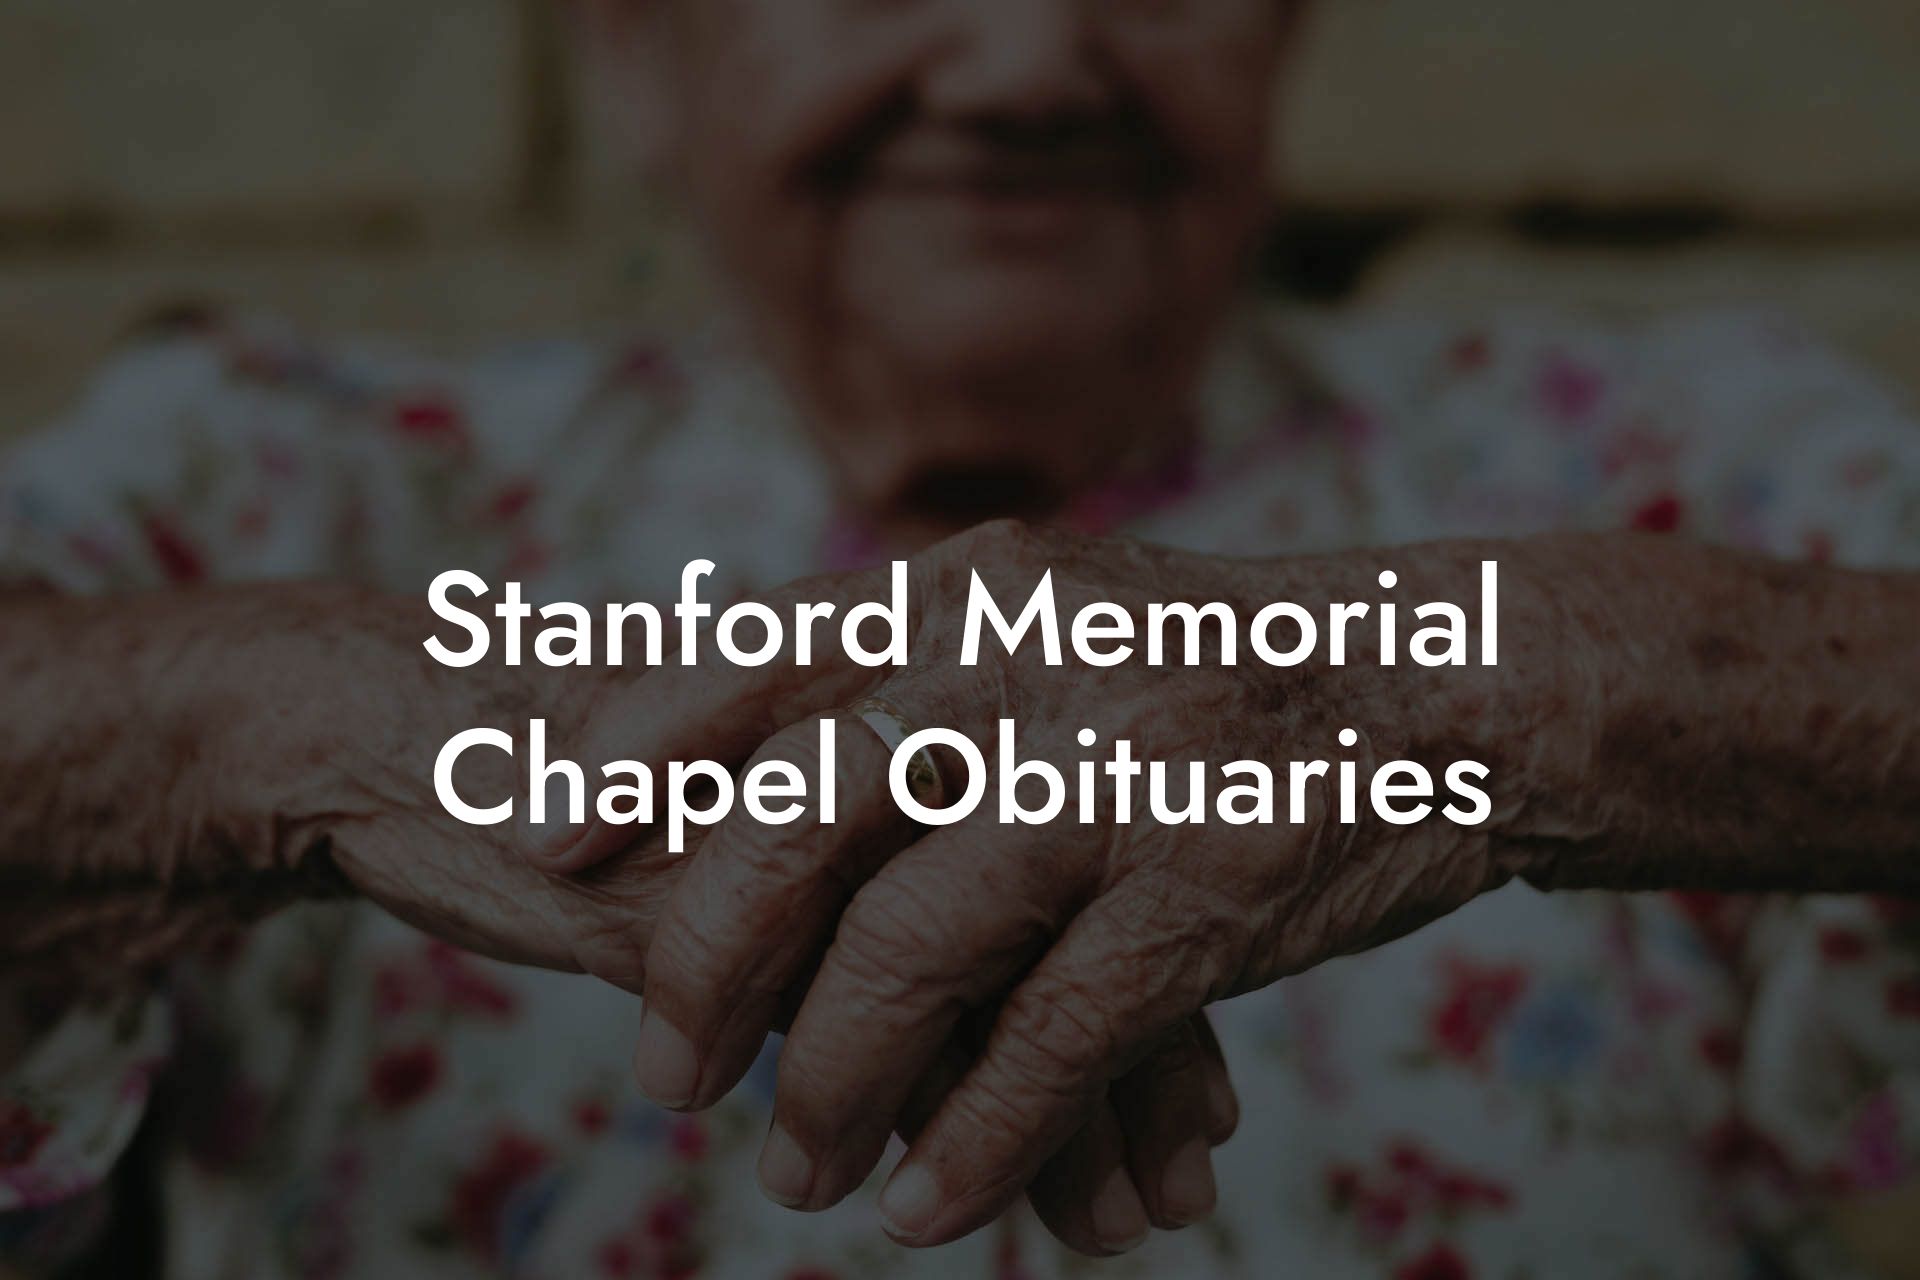 Stanford Memorial Chapel Obituaries